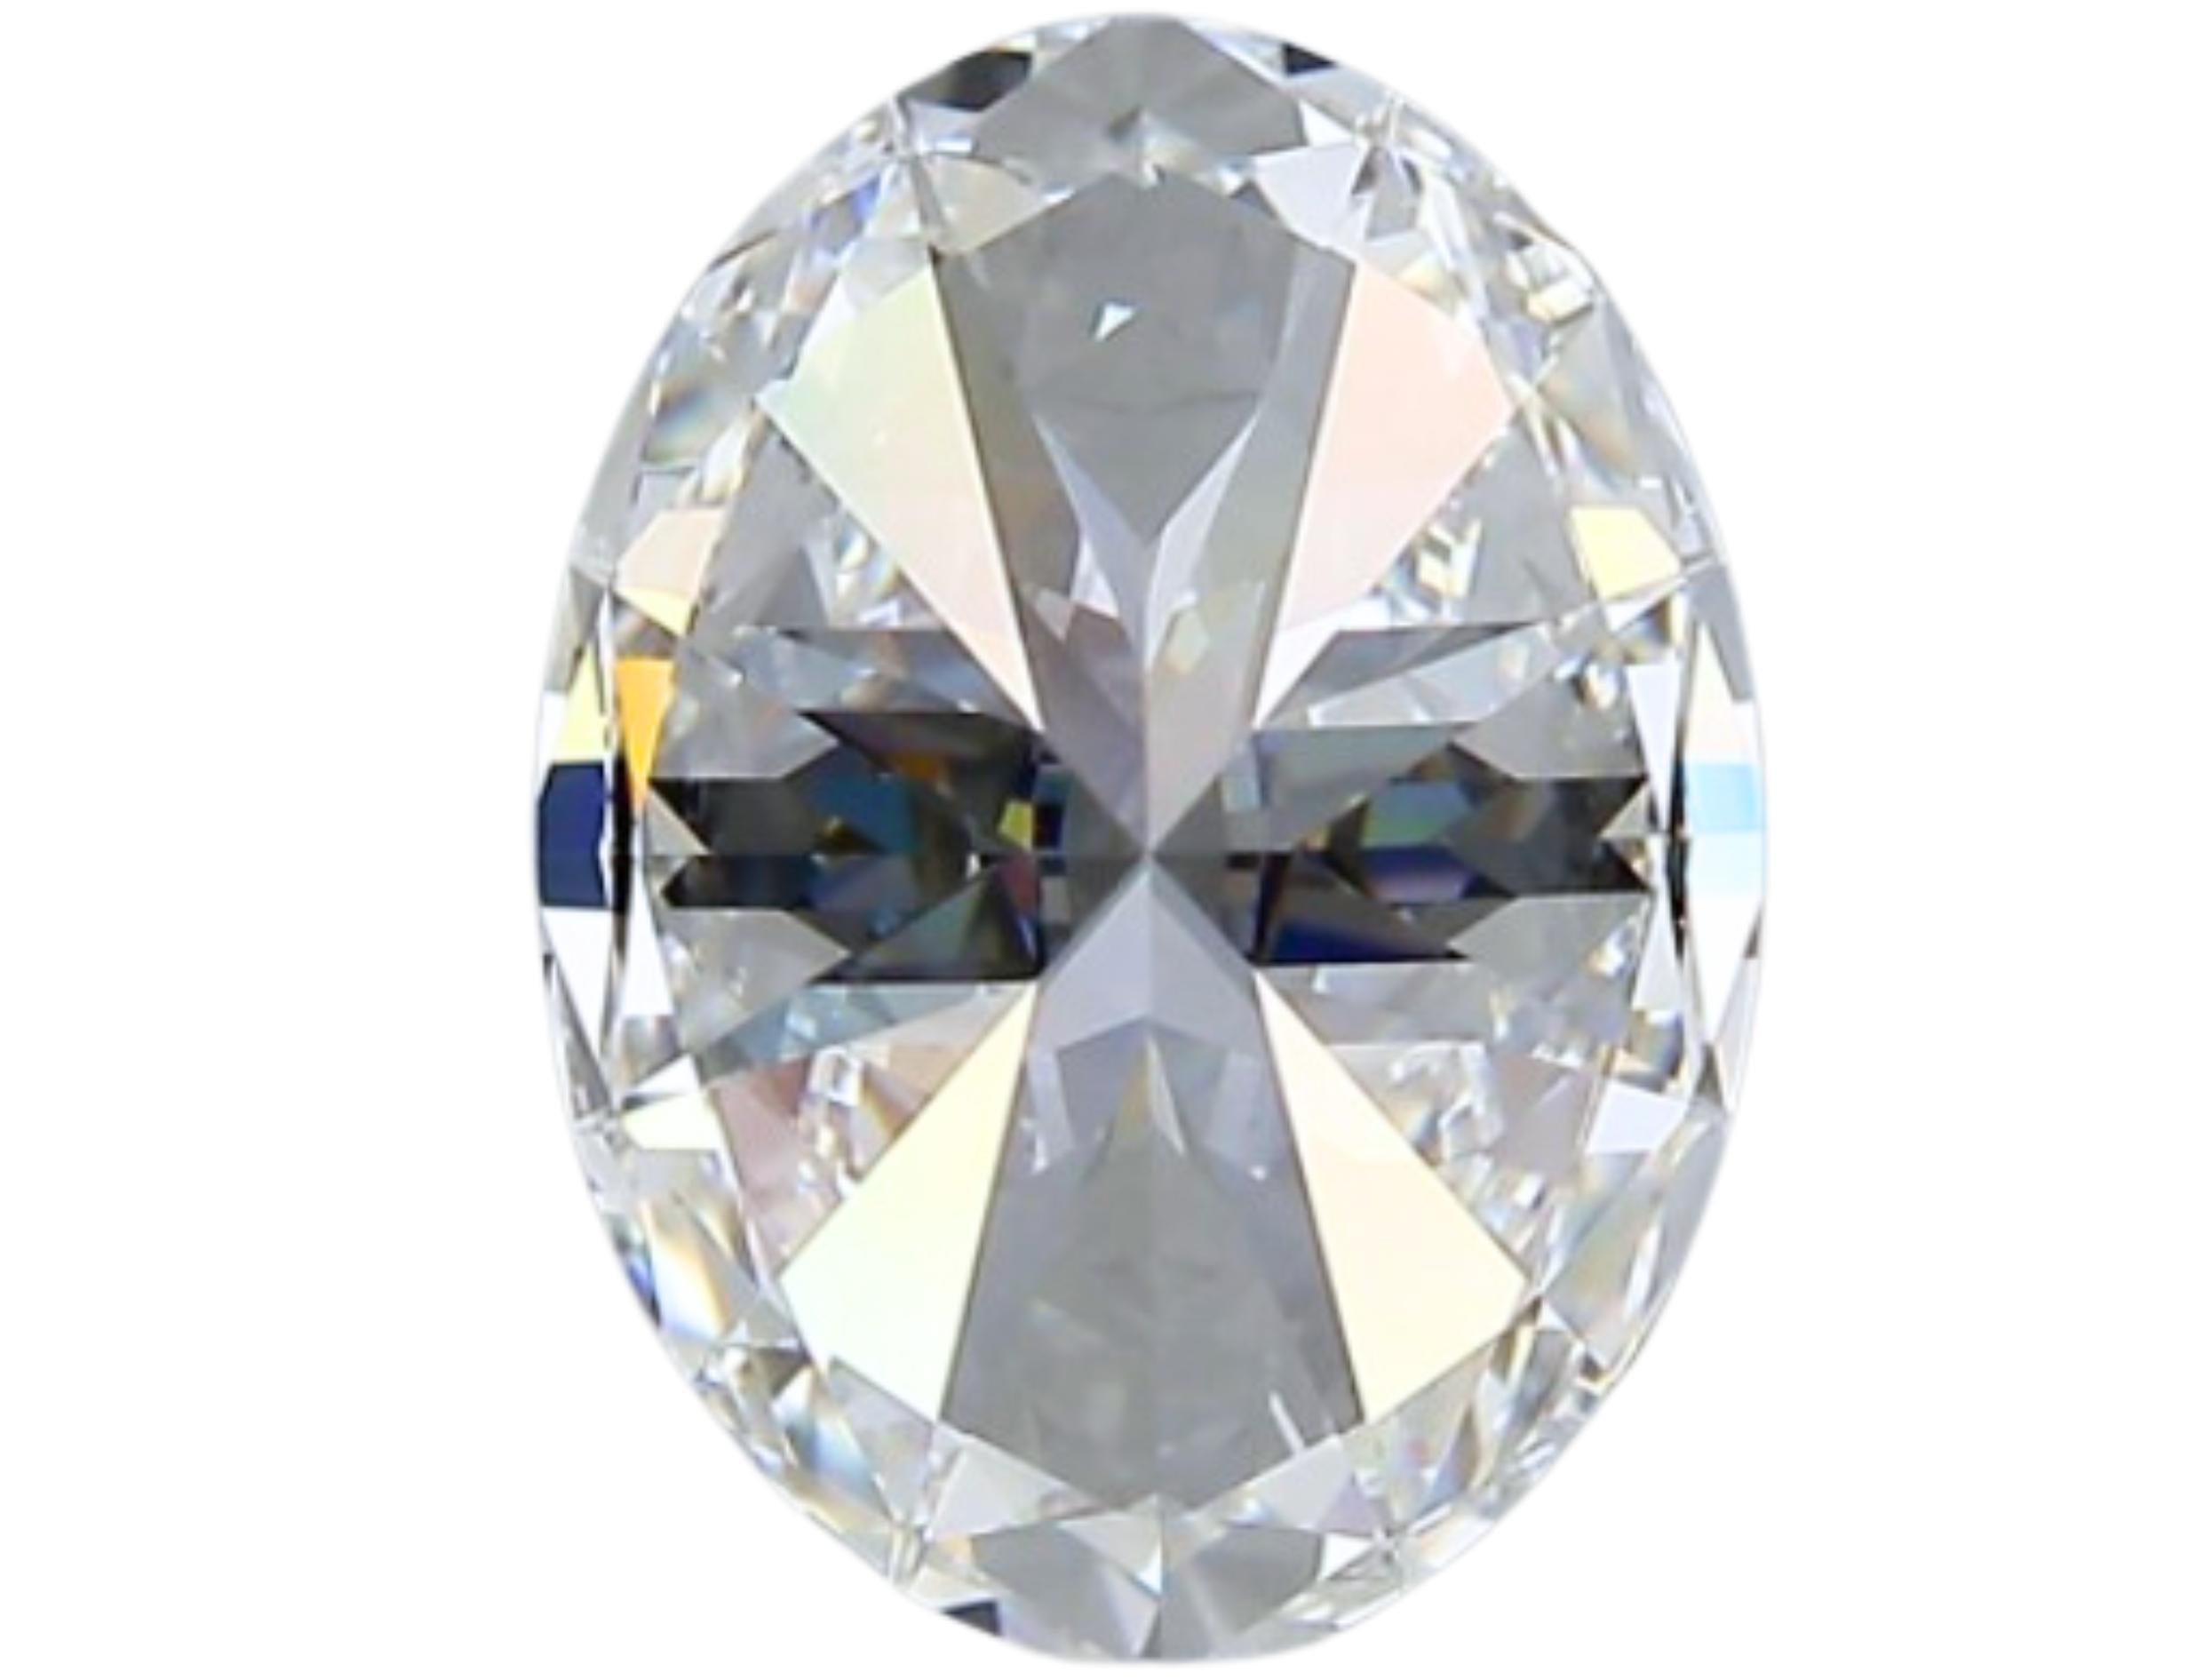 Sparkling 1.73 carat Oval Cut Brilliant Diamond For Sale 2